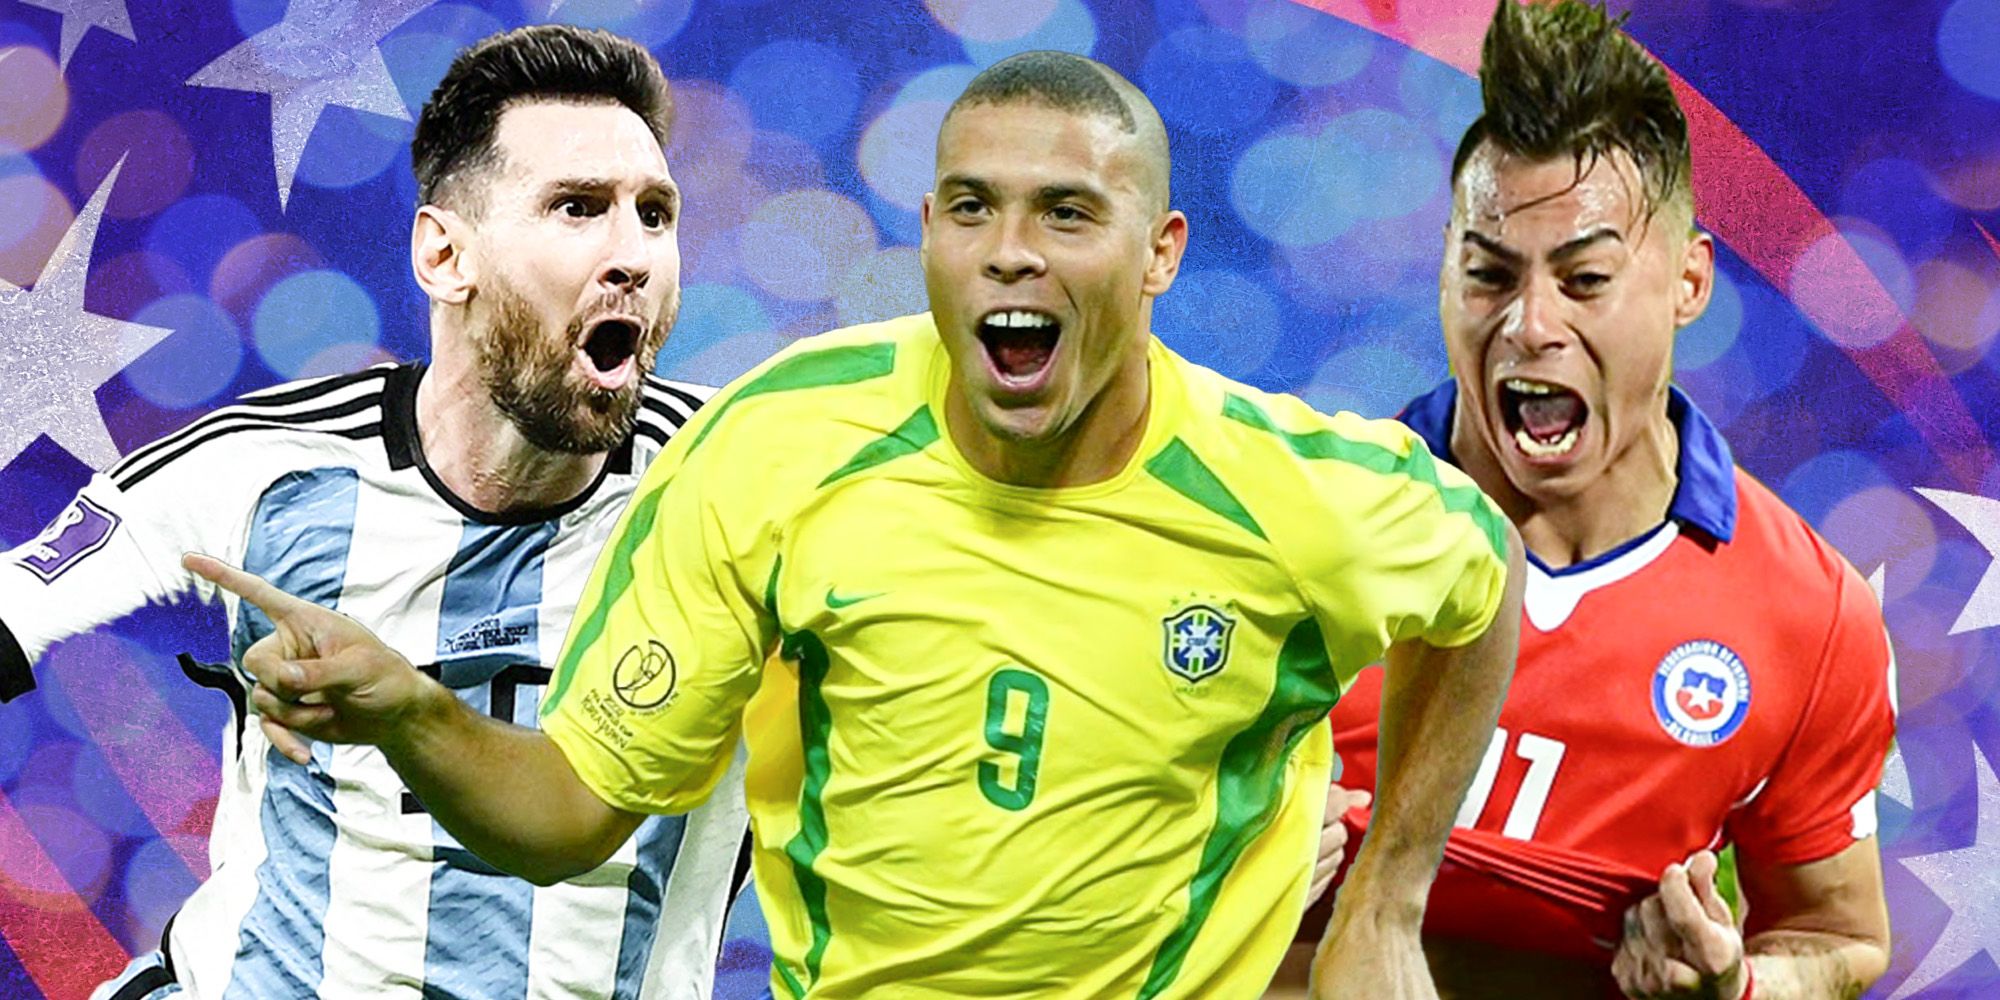 Lionel Messi, Ronaldo and Eduardo Vargas all celebrating.